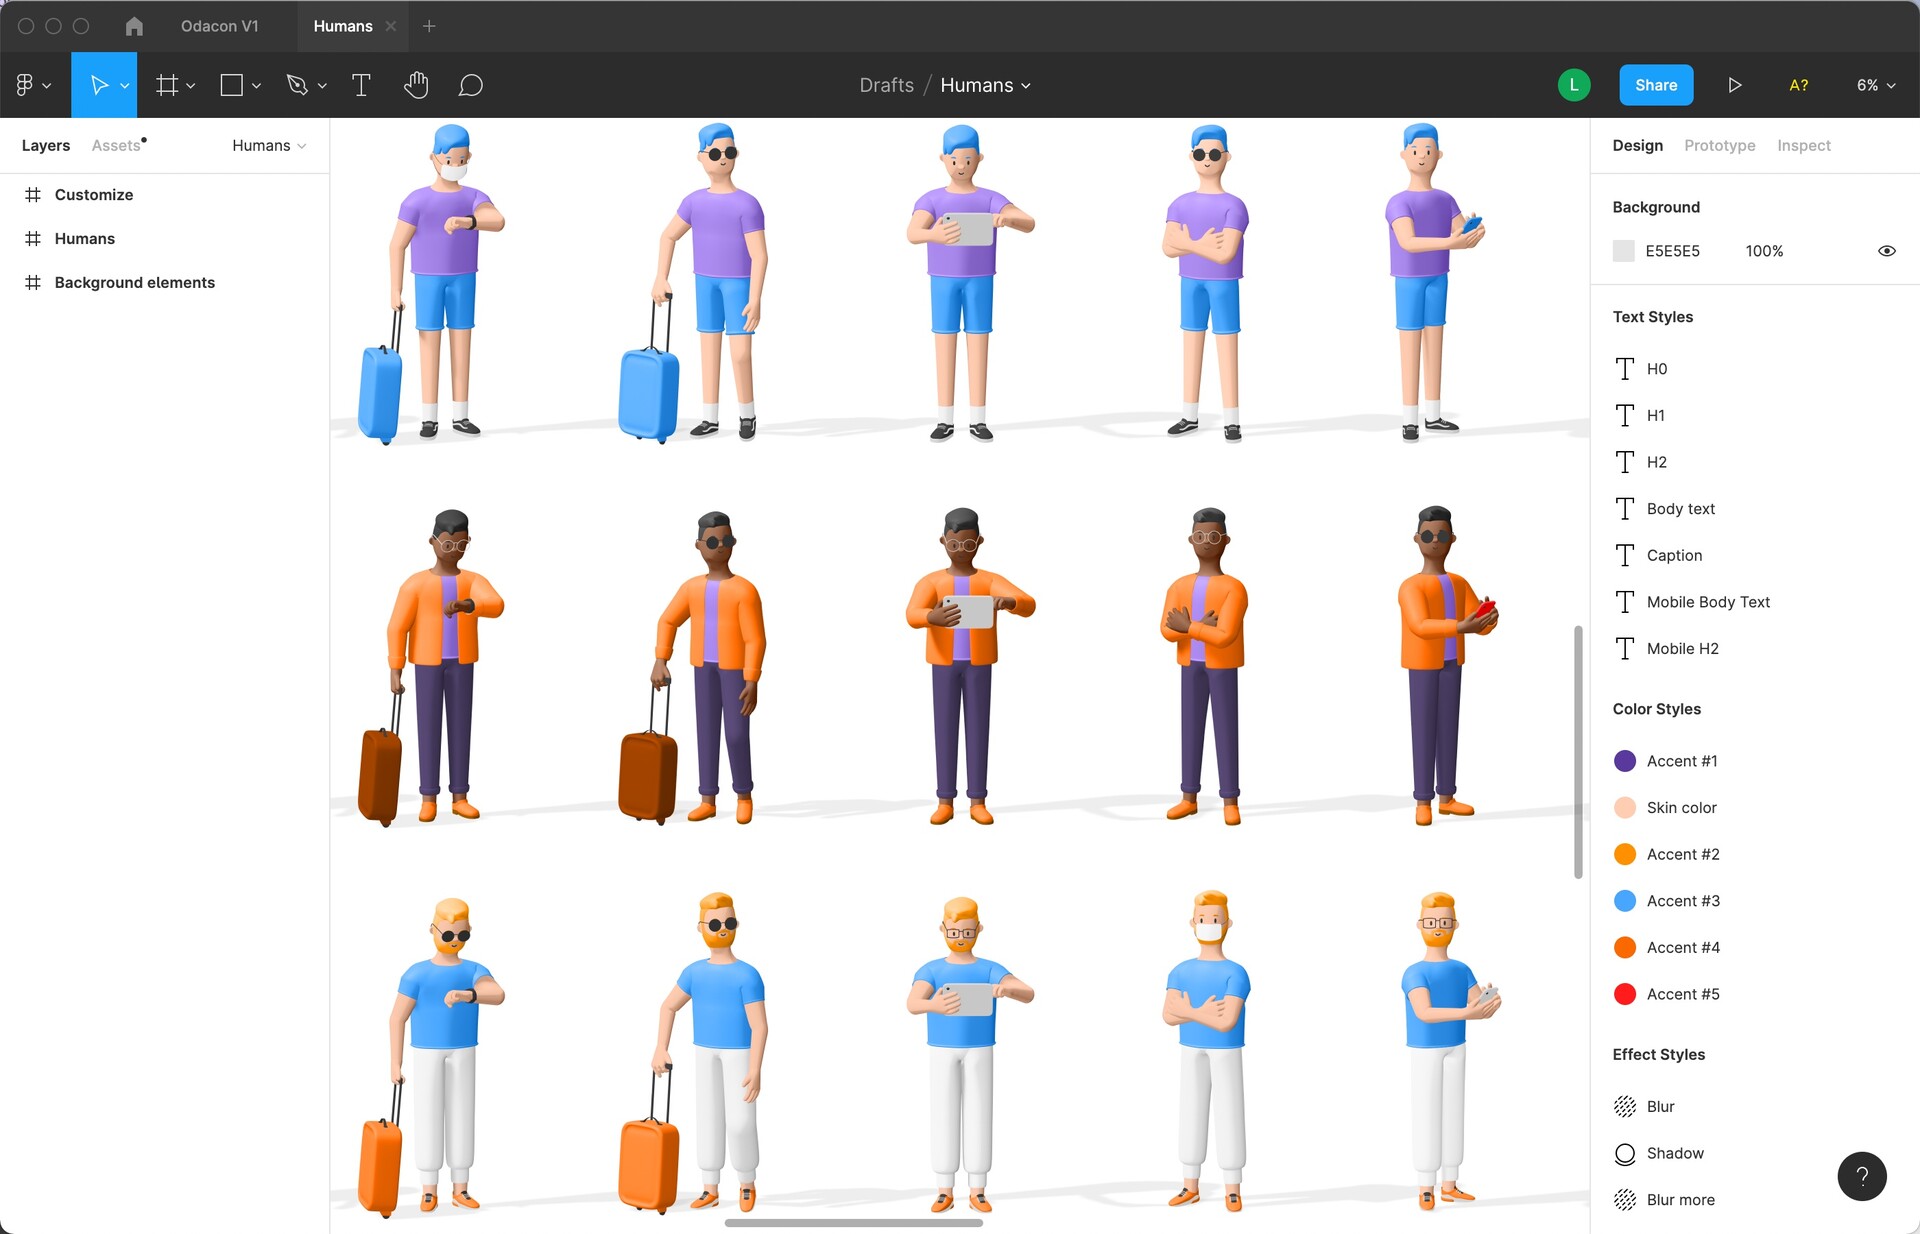 92个3D人物角色形象包含运动居家商务便装4种着装风格